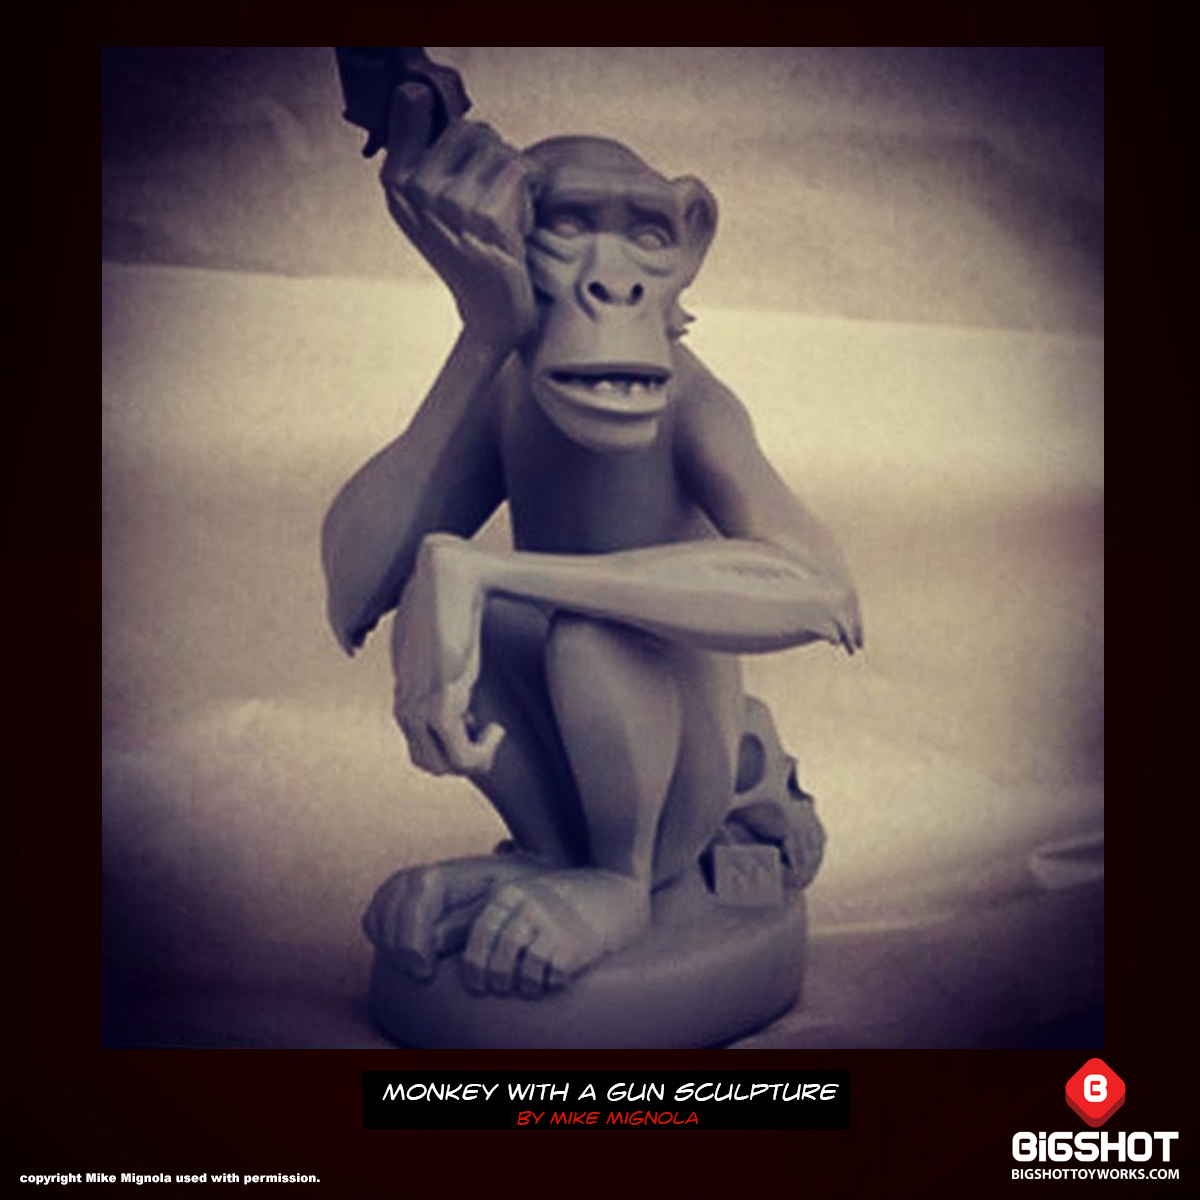 Mike-Mignola-Monkey-with-a-Gun-Sculpture-teaseOutput7_o.jpg